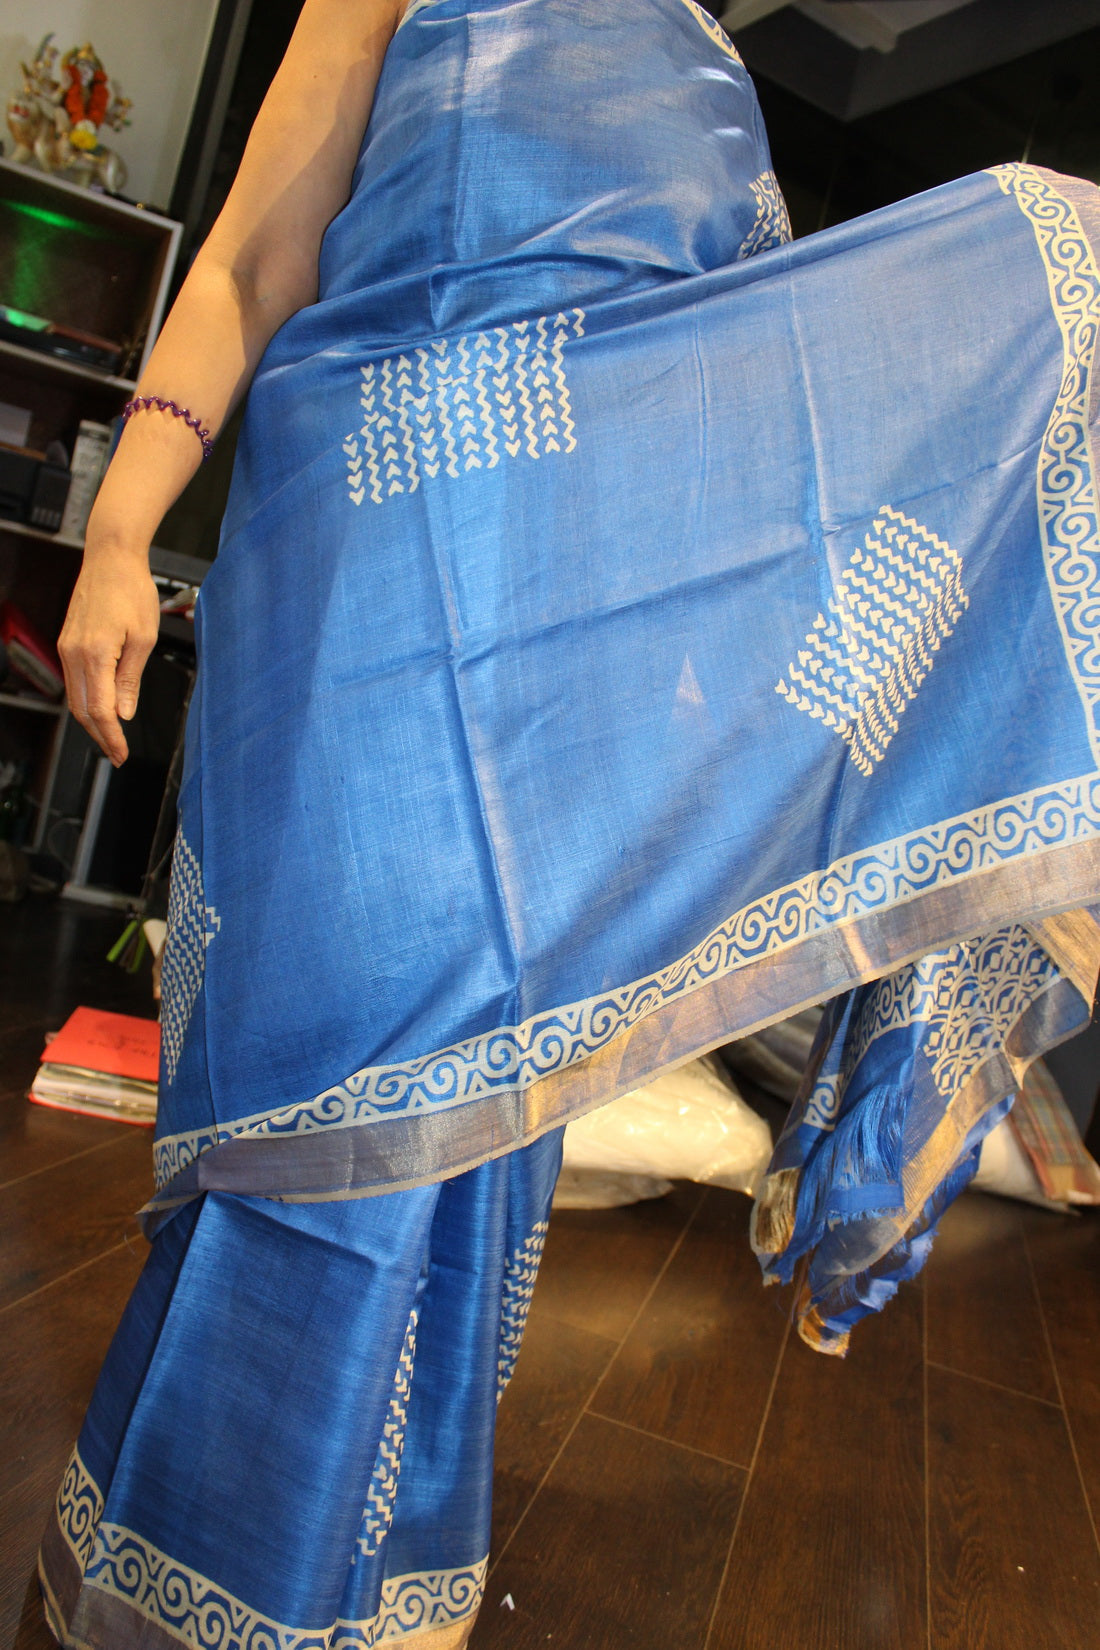 100% Silk Tussar Blue Indian sari with jacquard border